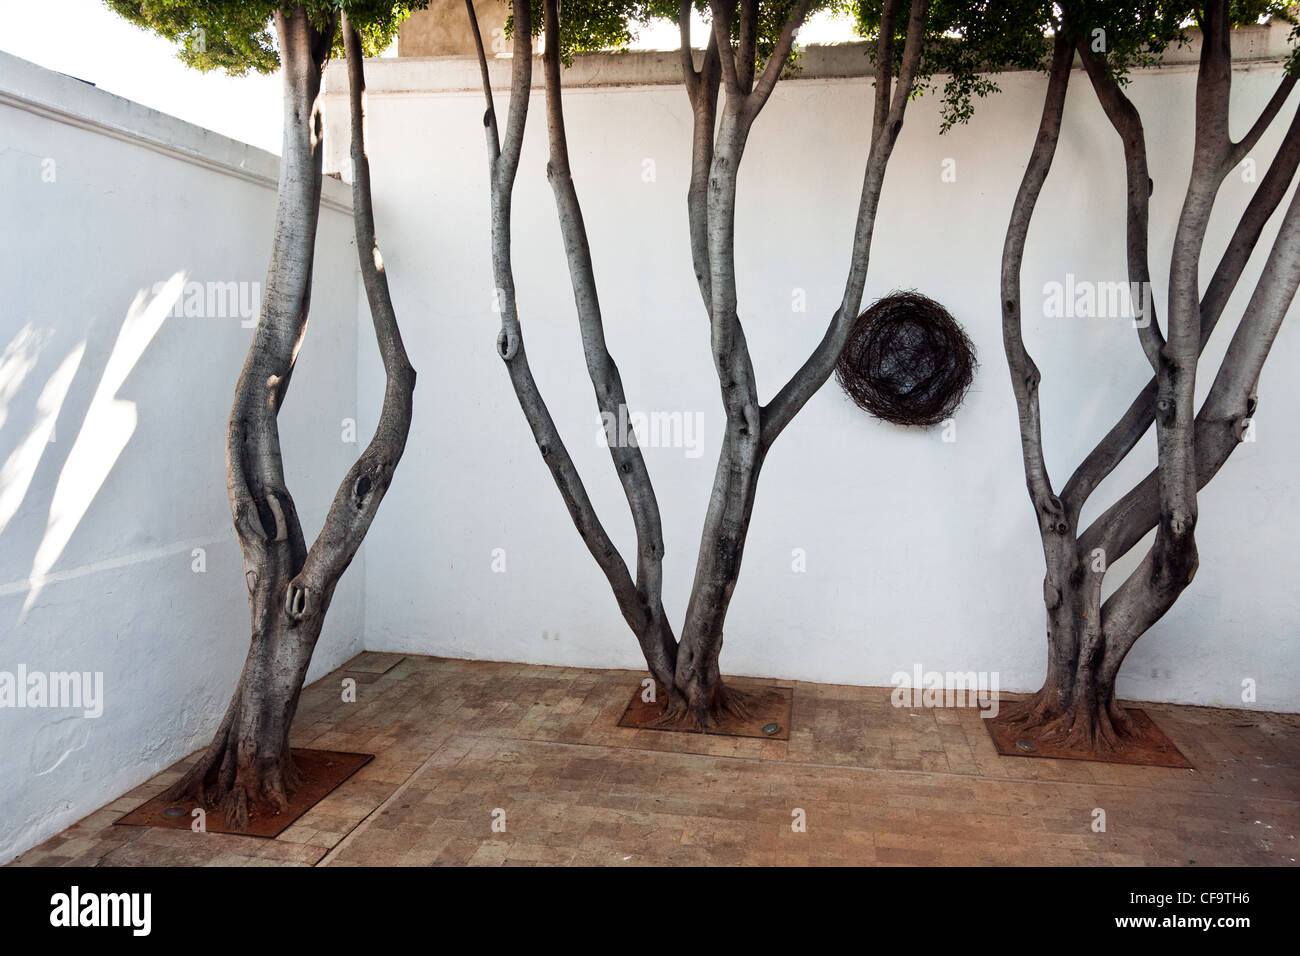 Trois beaux vieux arbres Laurel datant de début de l'époque de la colonisation espagnole dans la cour d'Oaxaca Museum of Contemporary Art Banque D'Images